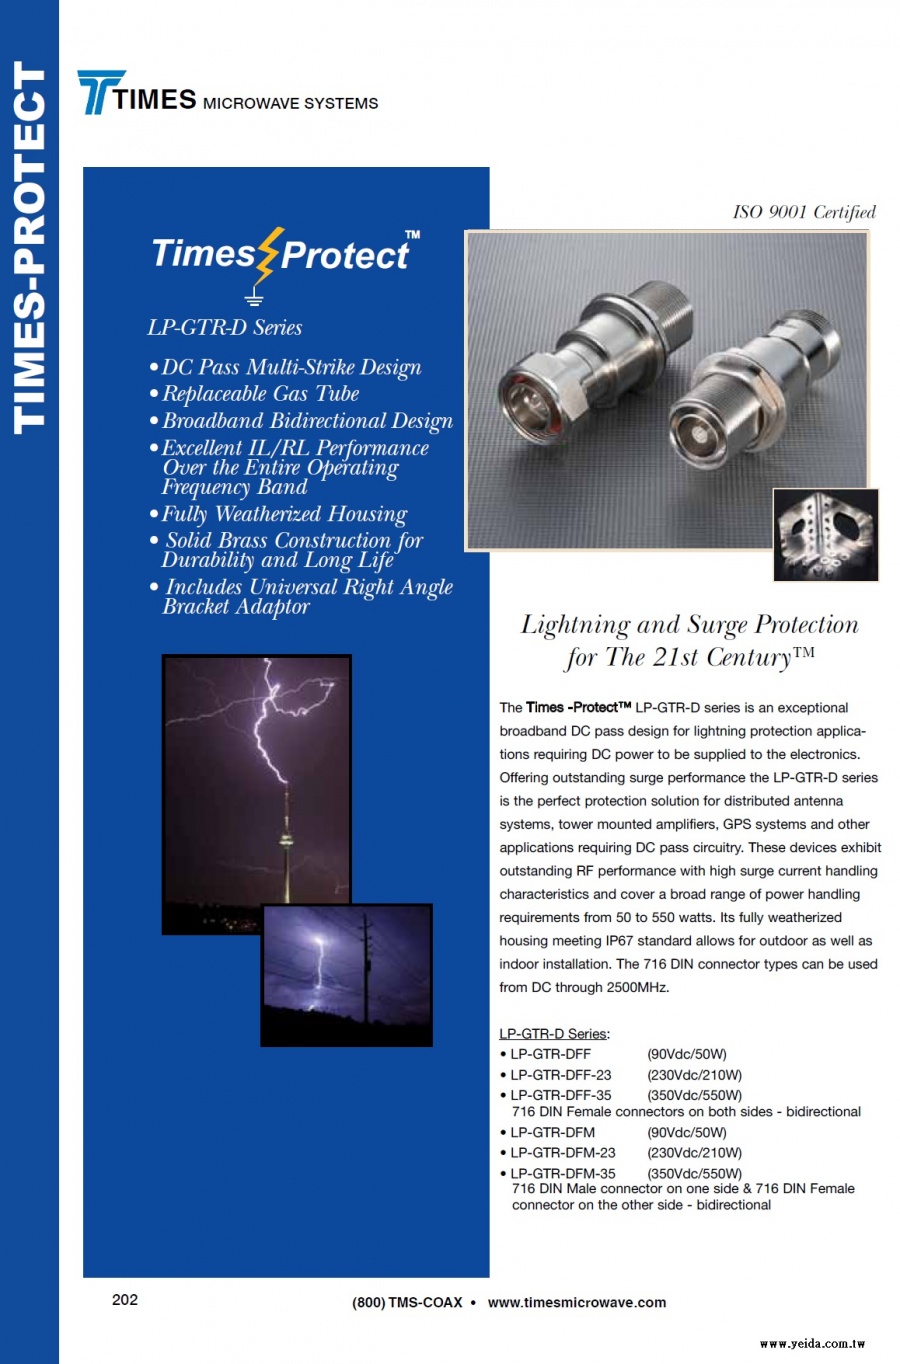 TIMES-LP-GTR-D Series Times-Protect Lightning Protection (LMR低損耗同軸電纜高性能的電湧突波保護避雷器)產品圖